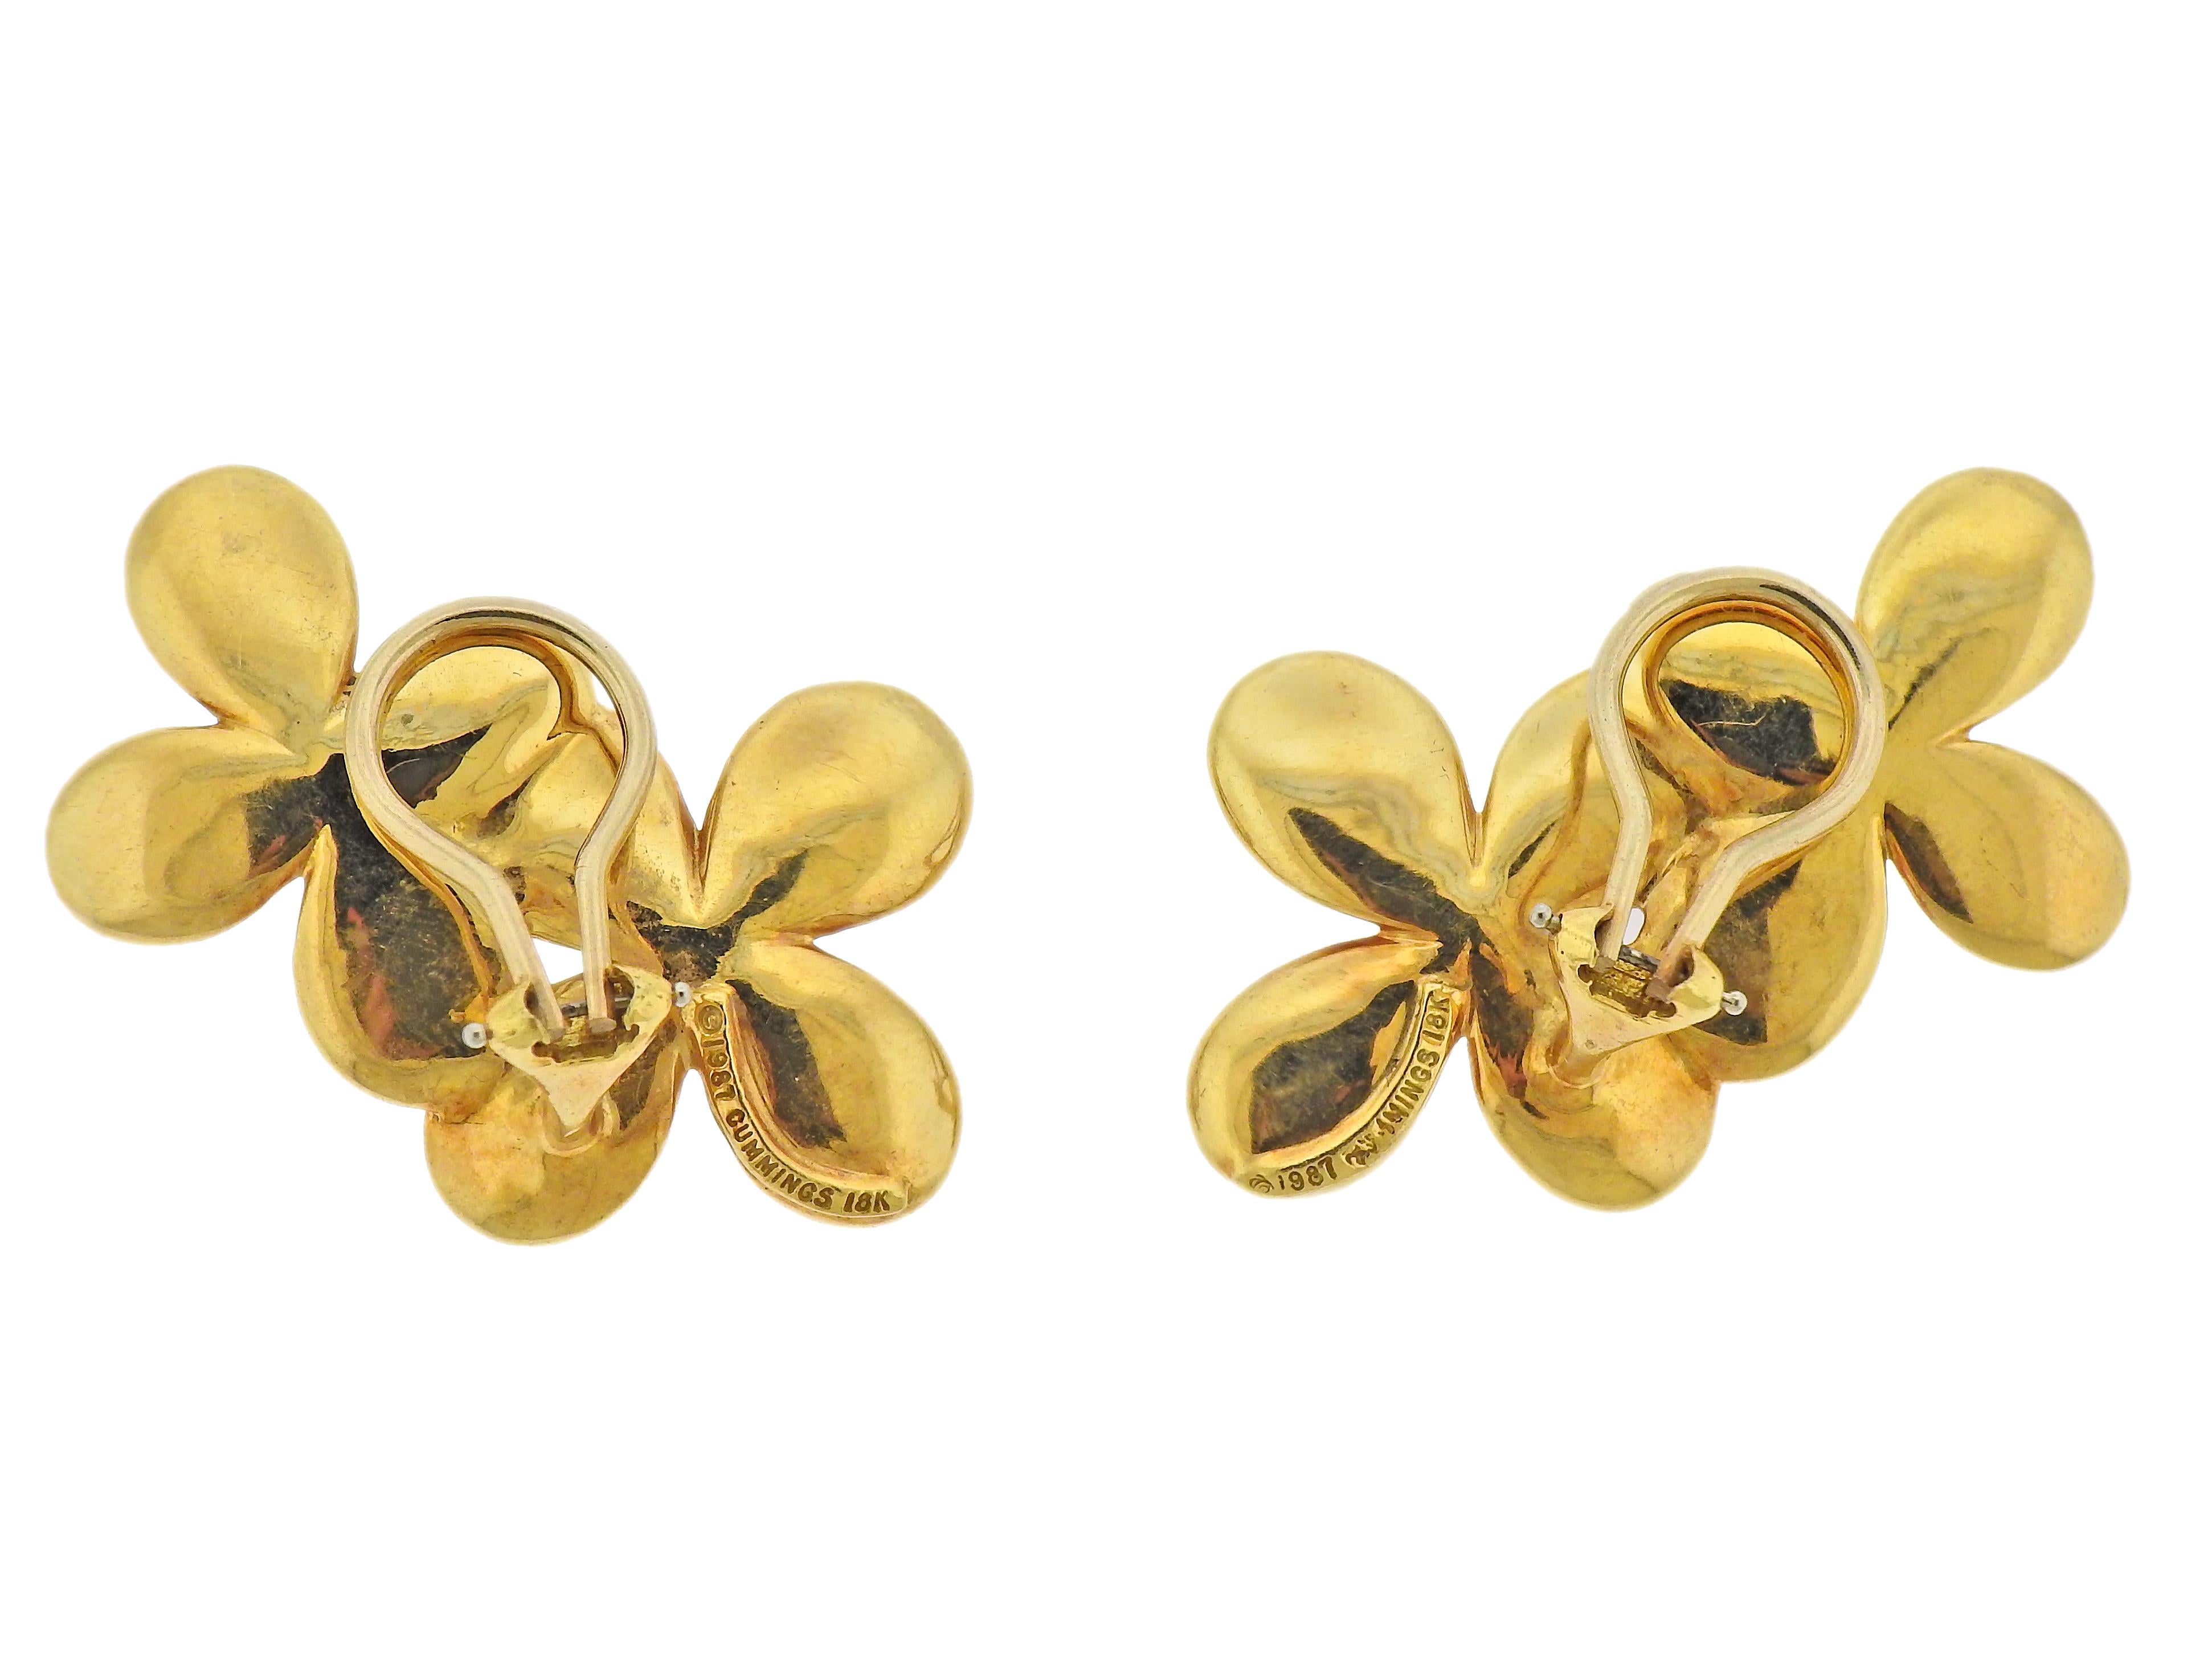 Circa 1987, pair of 18k gold flower earrings by Angela Cummings. Earrings are 38mm x 26mm. Marked: Angela Cummings, 1987, 18k. Weight - 22.3 grams. 